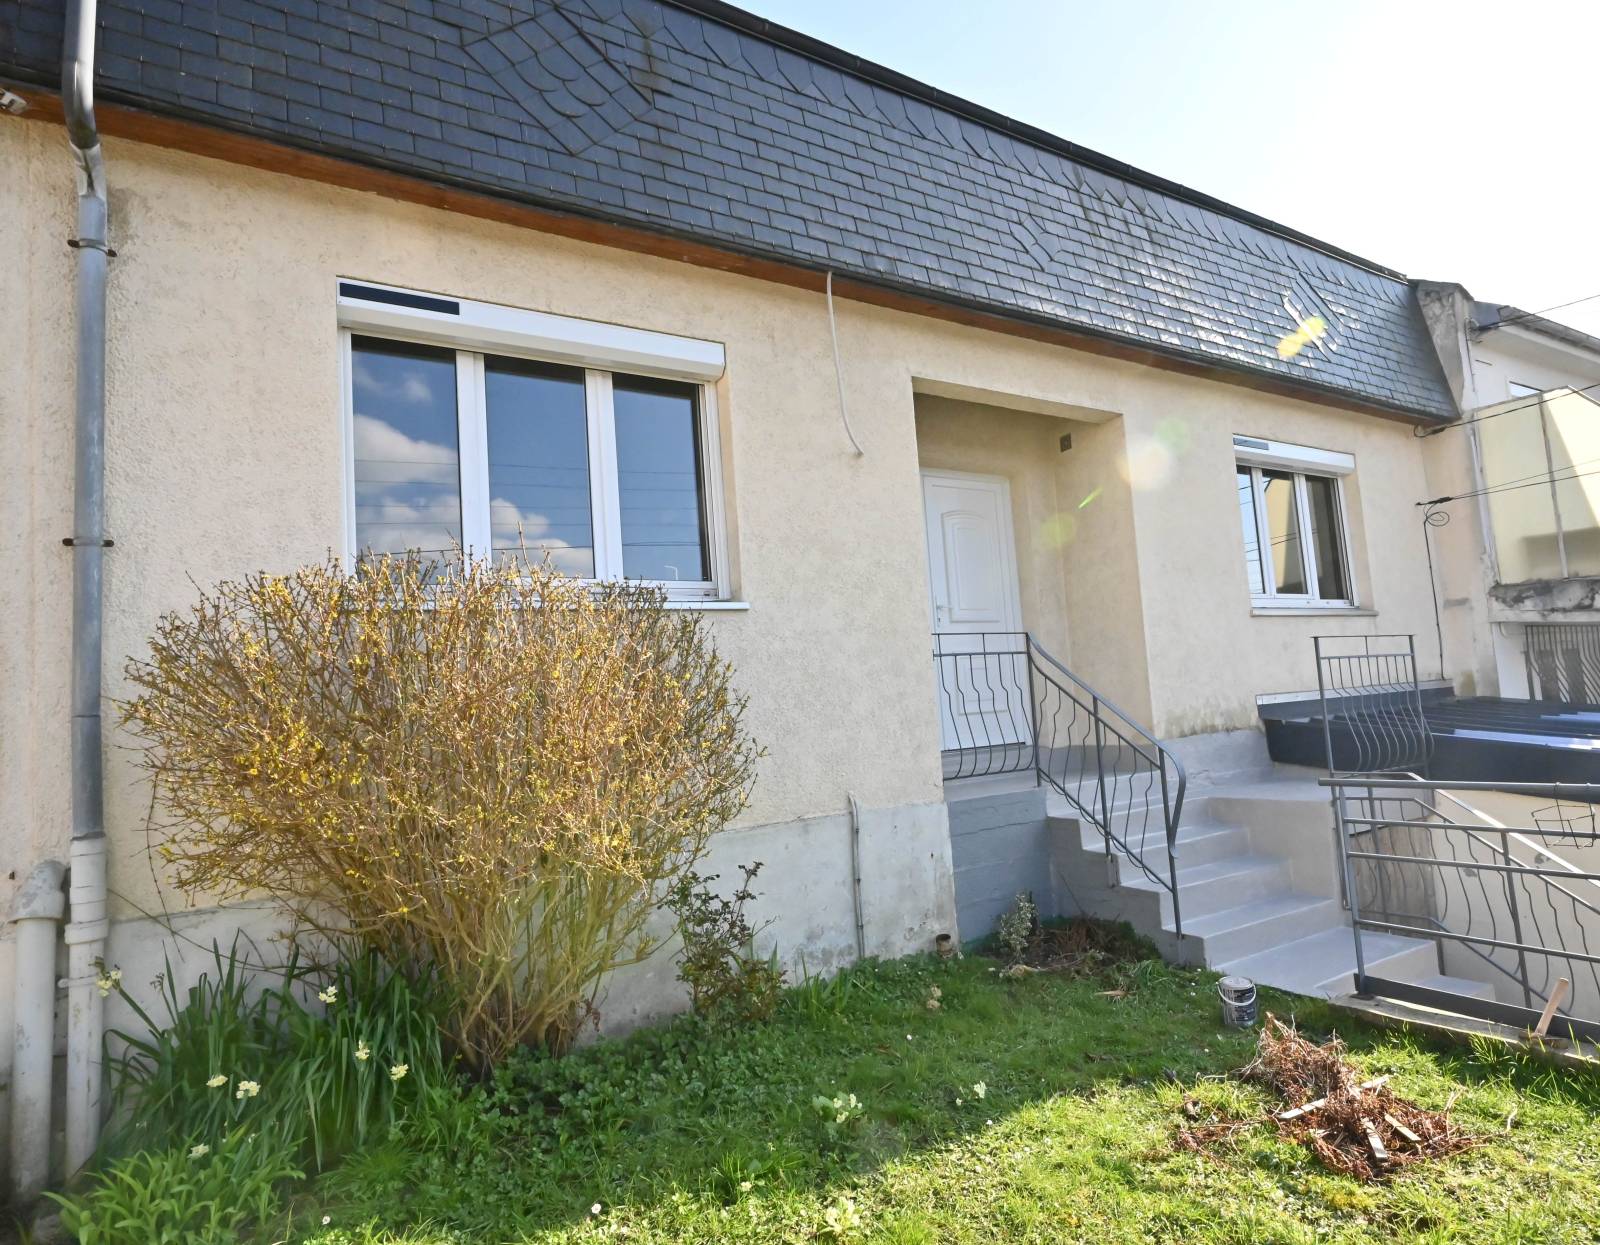 EN EXCLUSIVITÉ, Maison RÉNOVÉE, avec JARDIN et GARAGE située au HAVRE secteur Sainte-Cécile (76610)